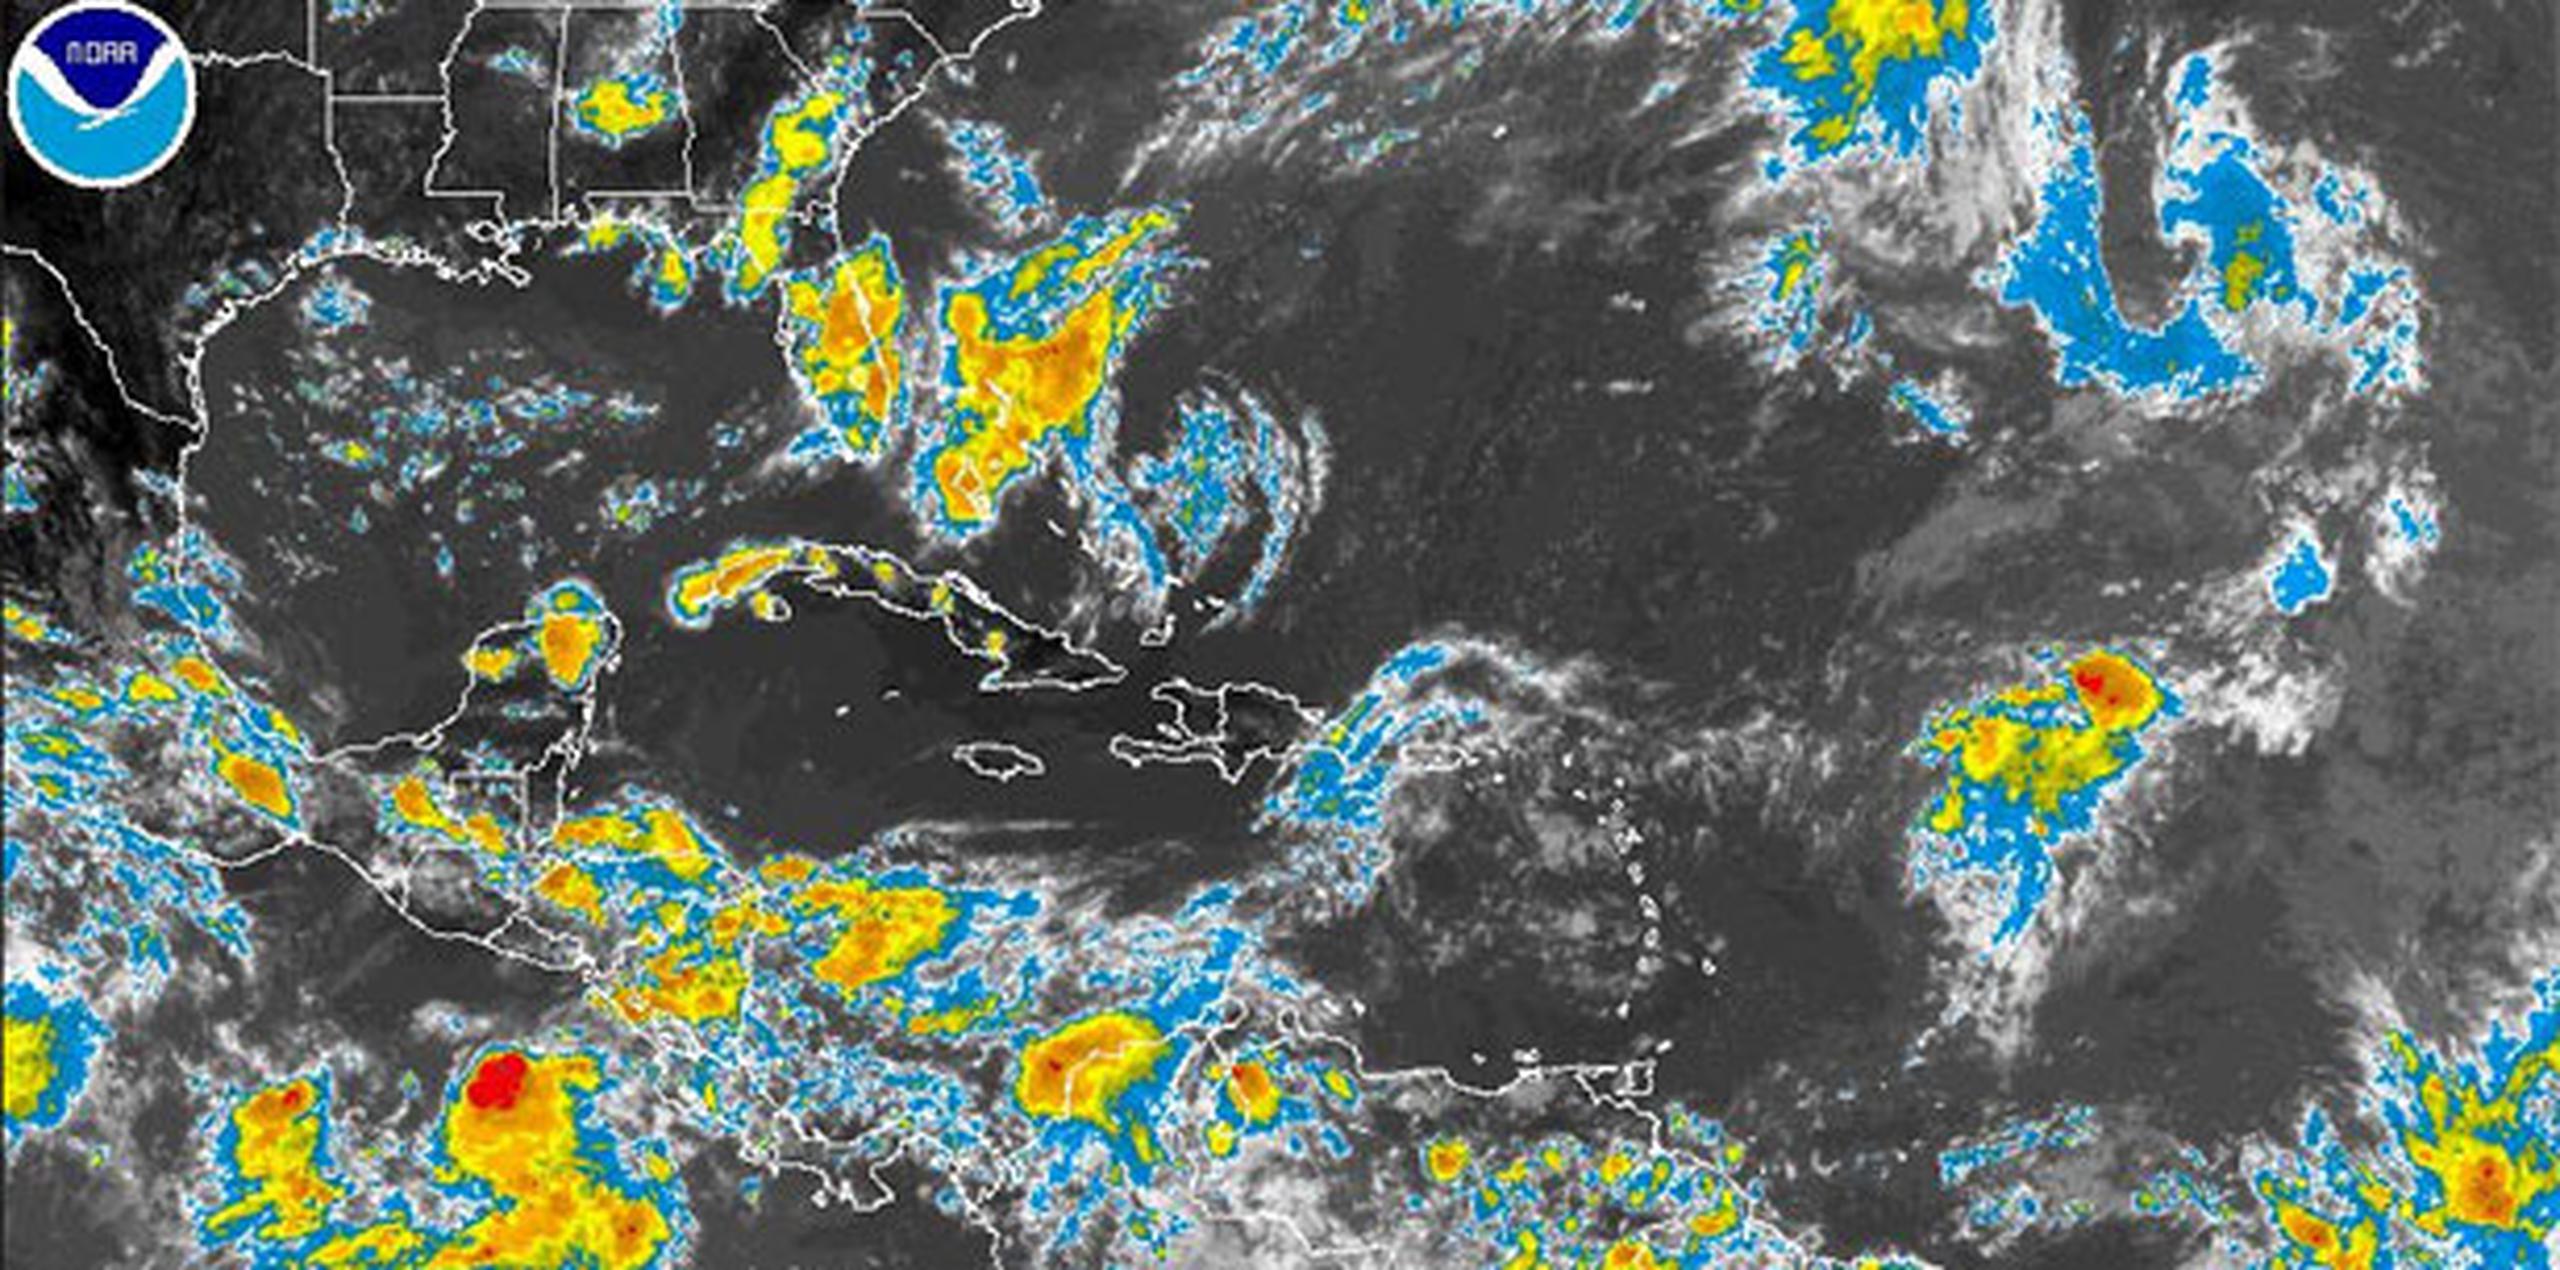 El SMN anunció que en lo que va del año ya se registrado 11 tormentas y huracanes: siete en el Pacífico y cuatro en el Atlántico. (NOAA)